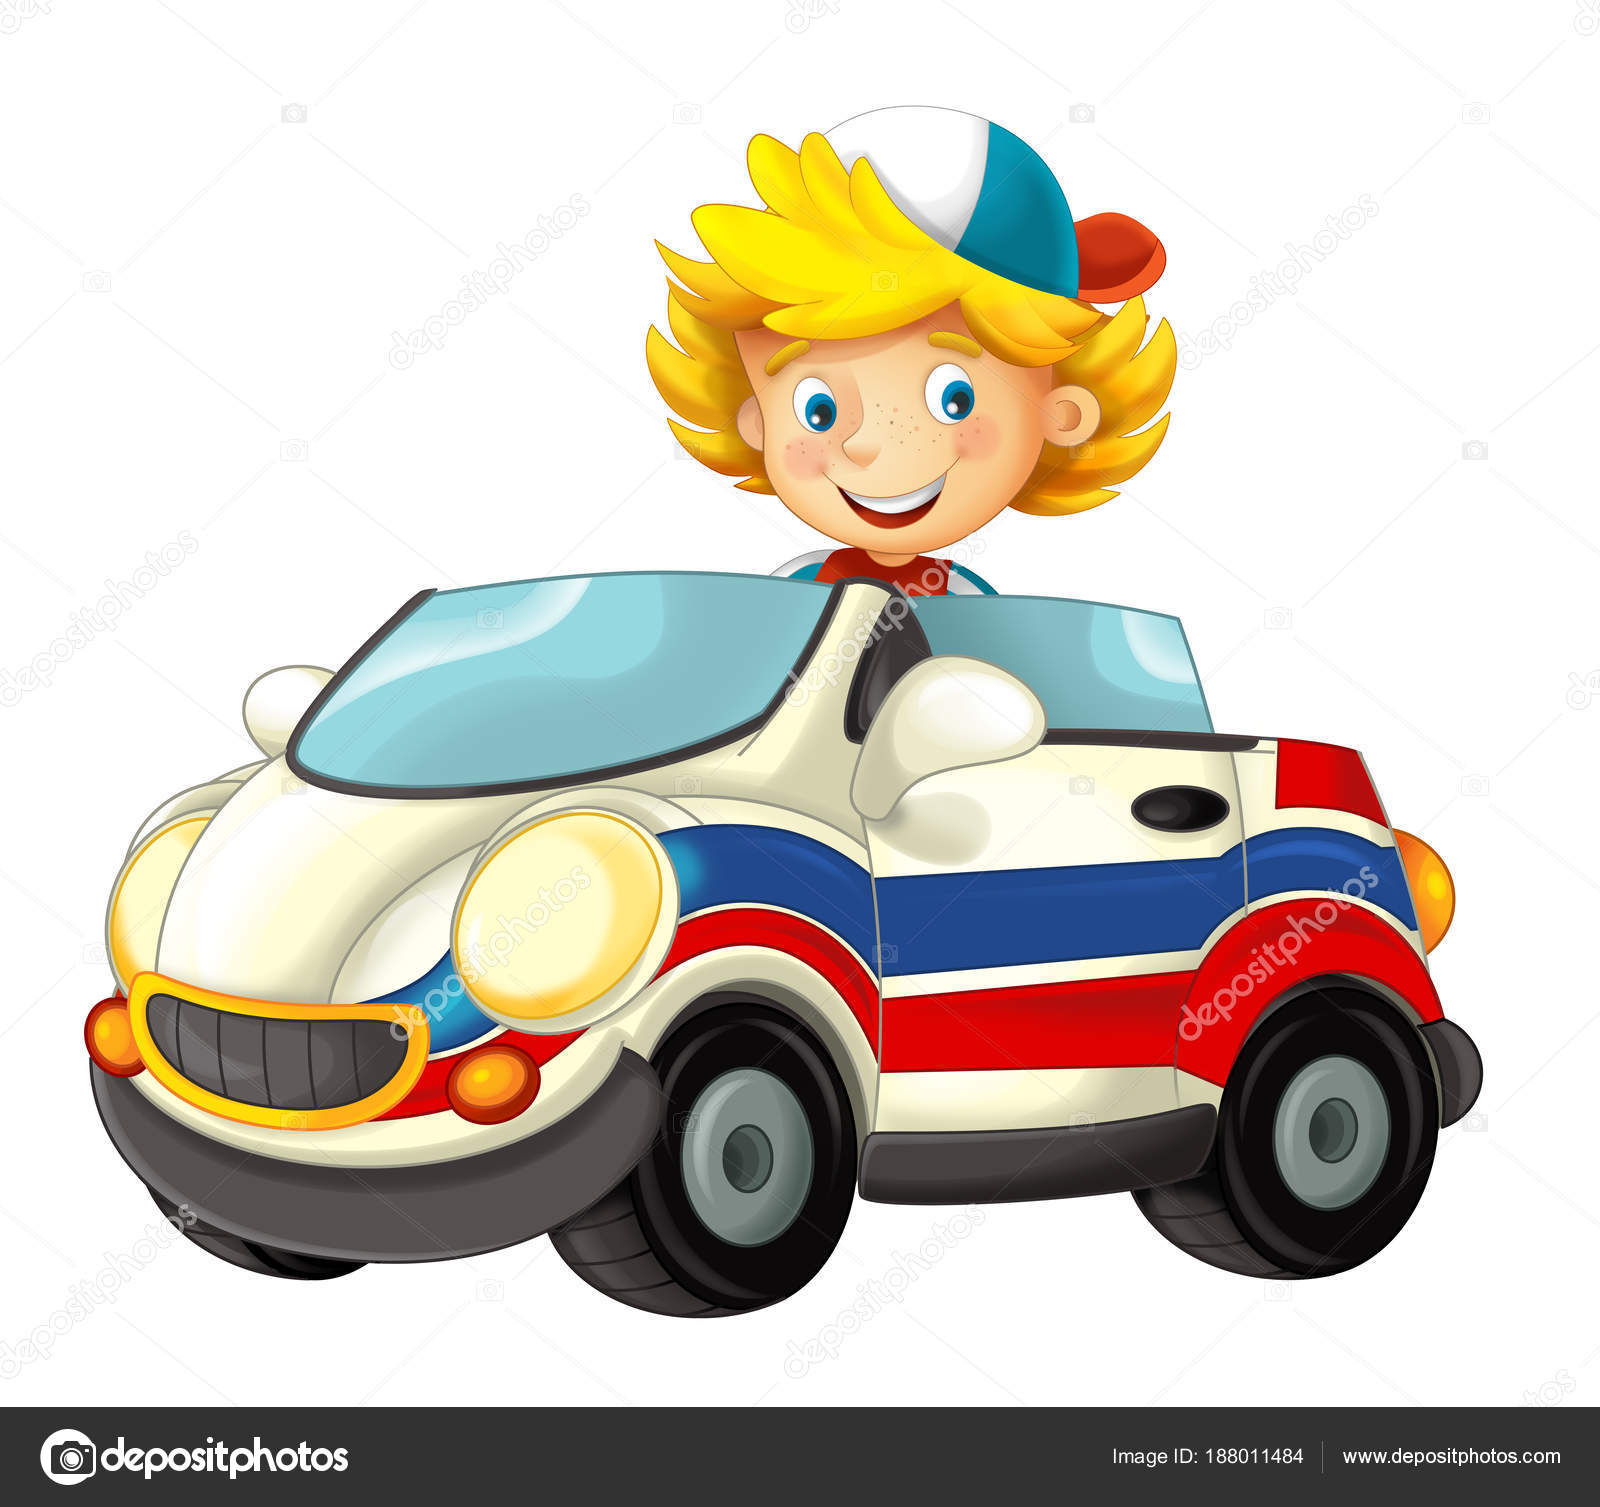 Cartoon Scene Child Boy Toy Car Ambulance White Background Illustration  Stock Photo by ©illustrator_hft 188011484